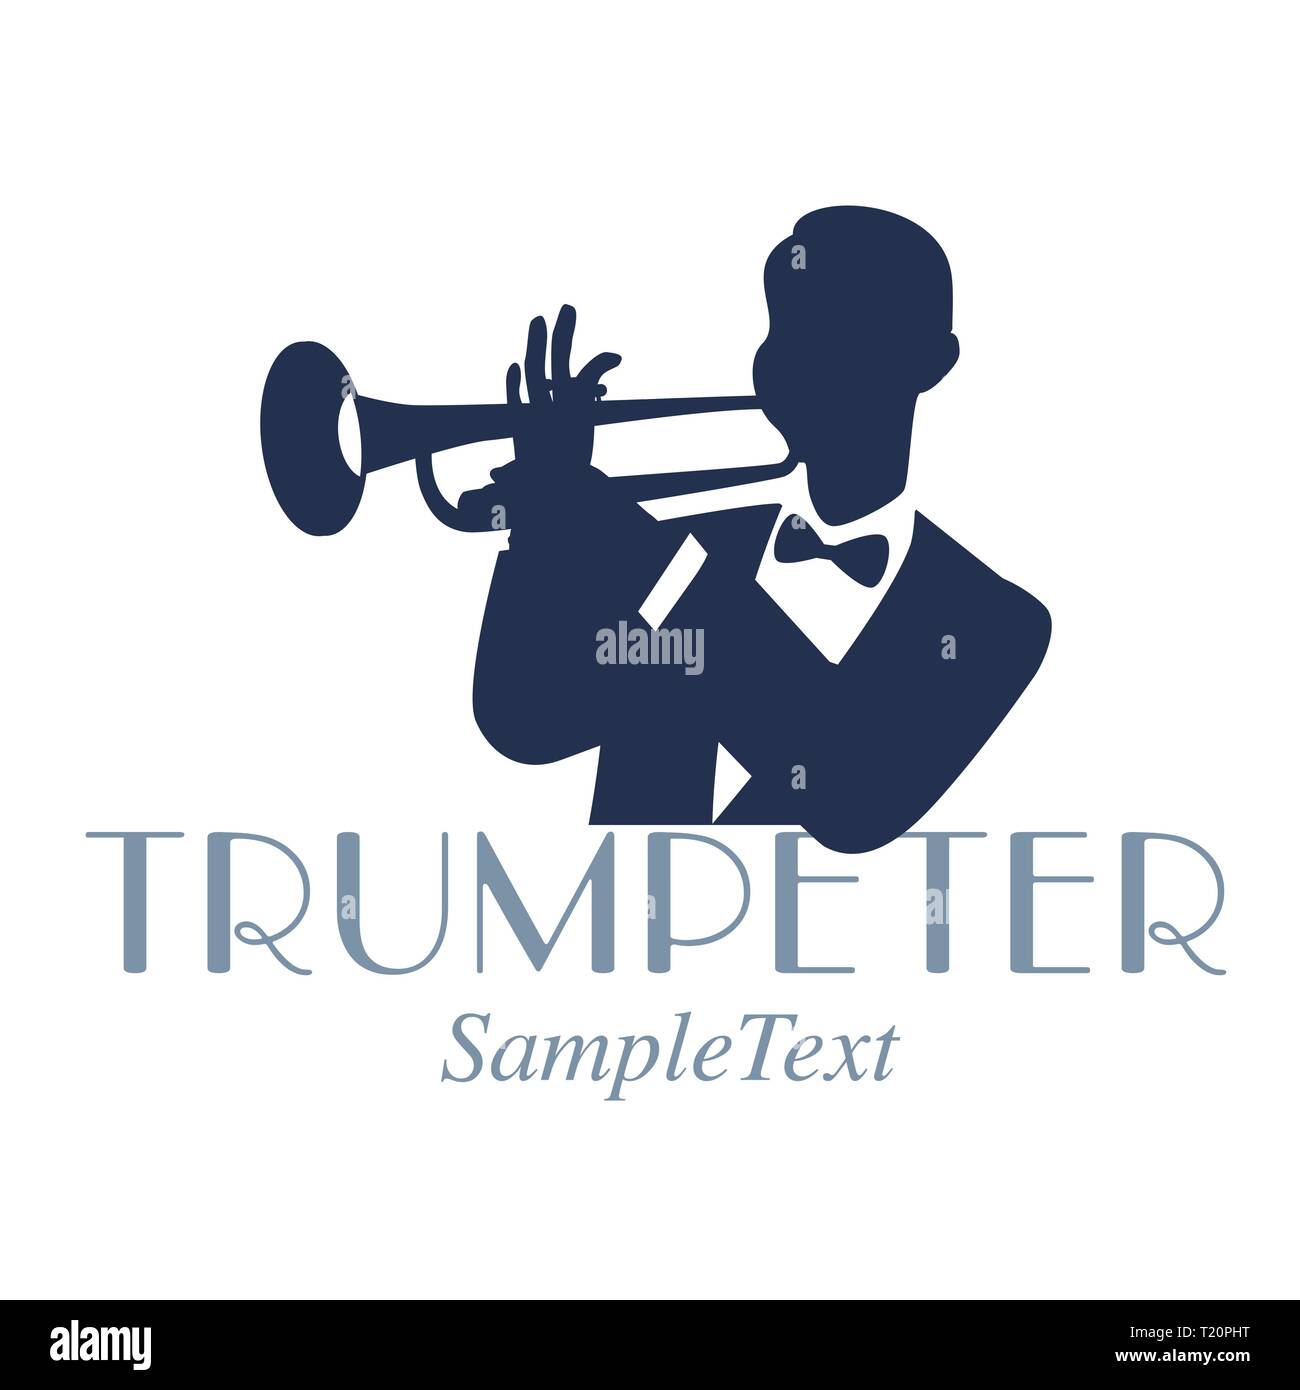 Jazz trumpet player Banque d'images vectorielles - Page 2 - Alamy